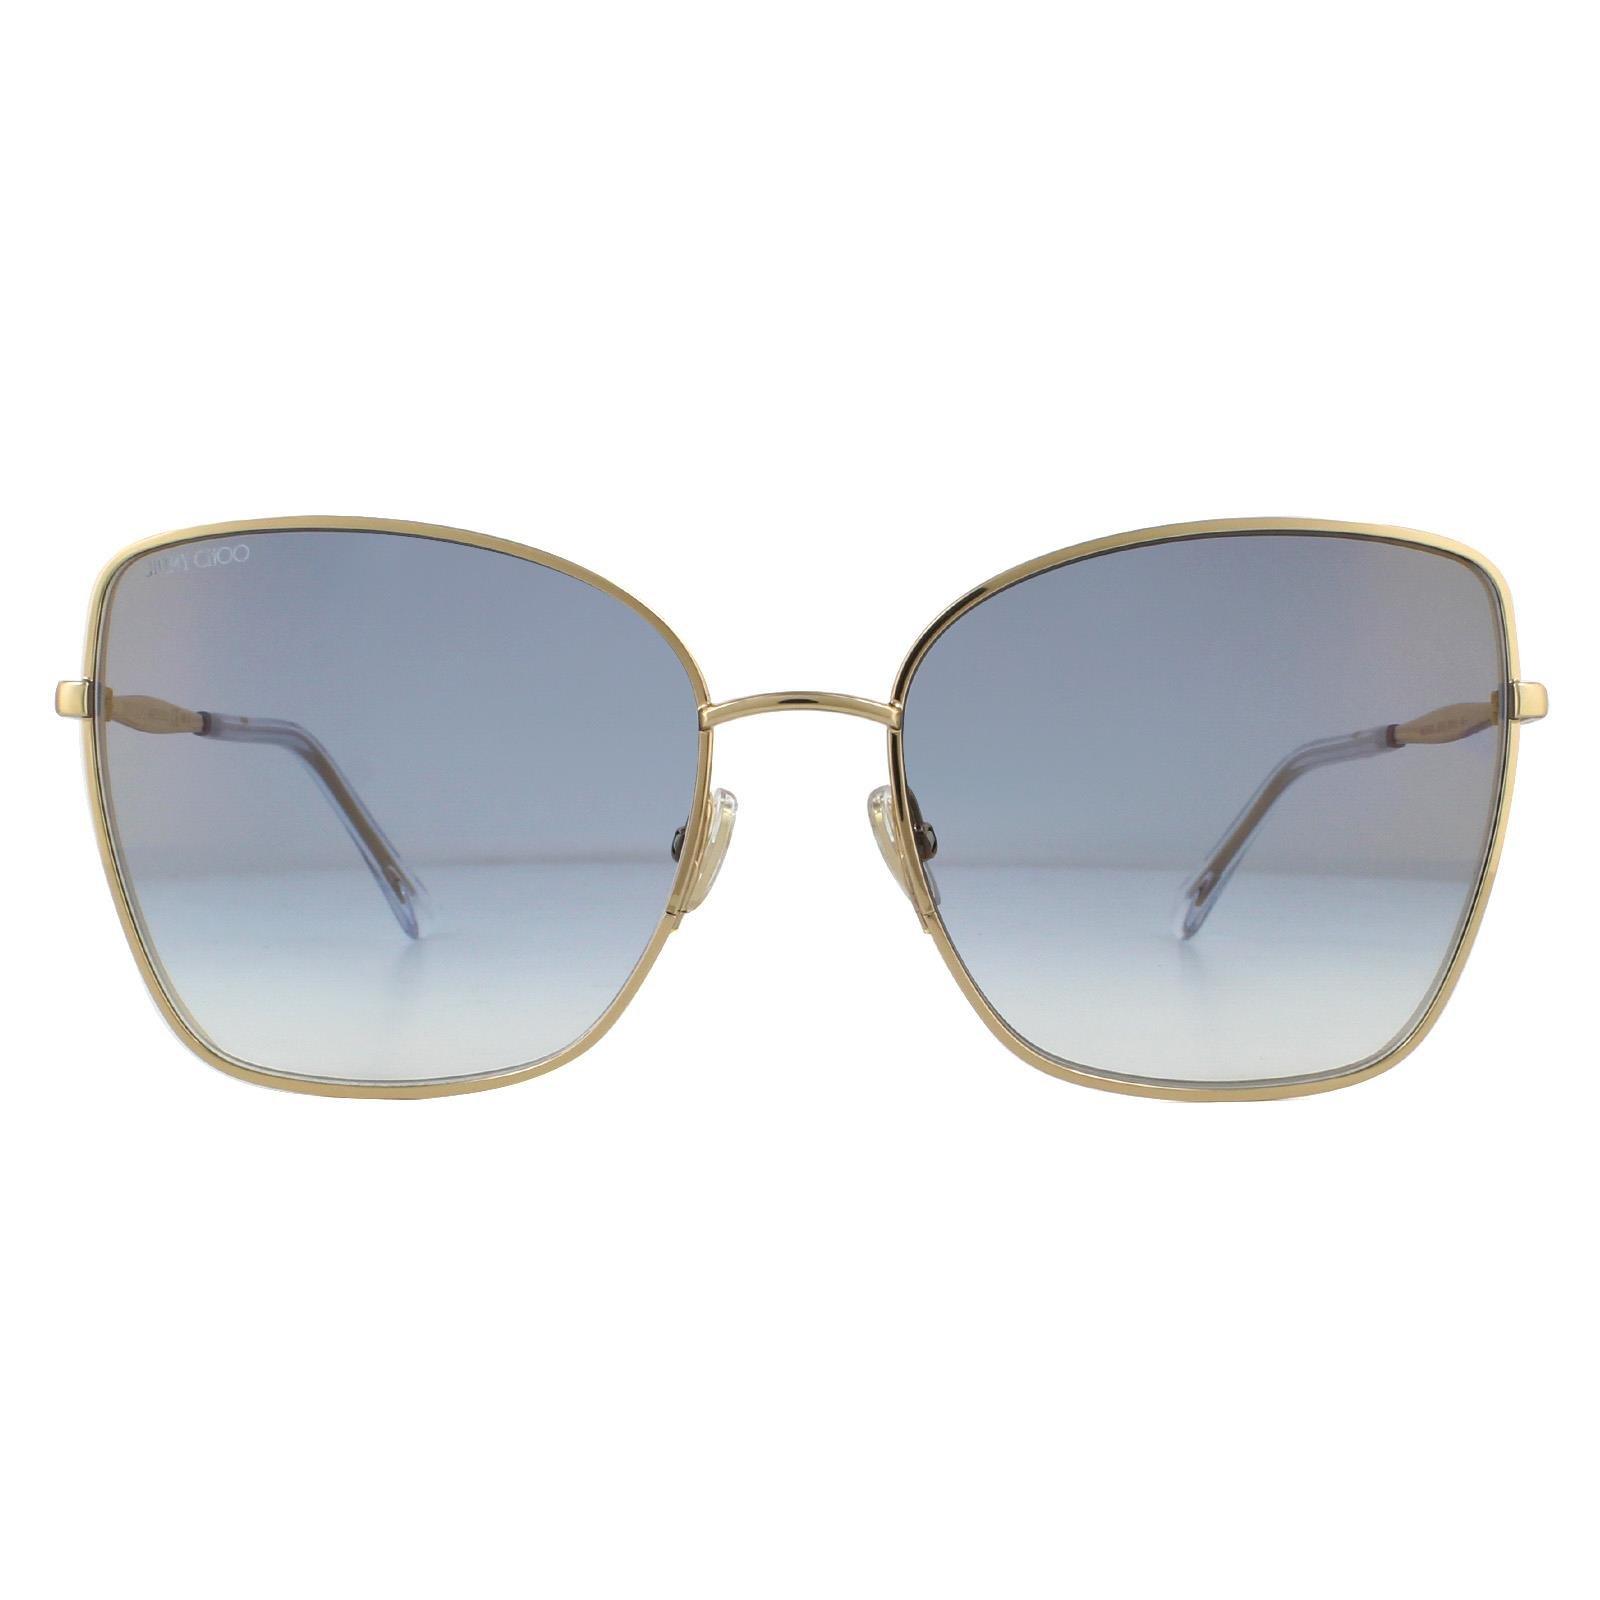 Квадратные солнцезащитные очки с градиентом розового золота и синего цвета Jimmy Choo, золото